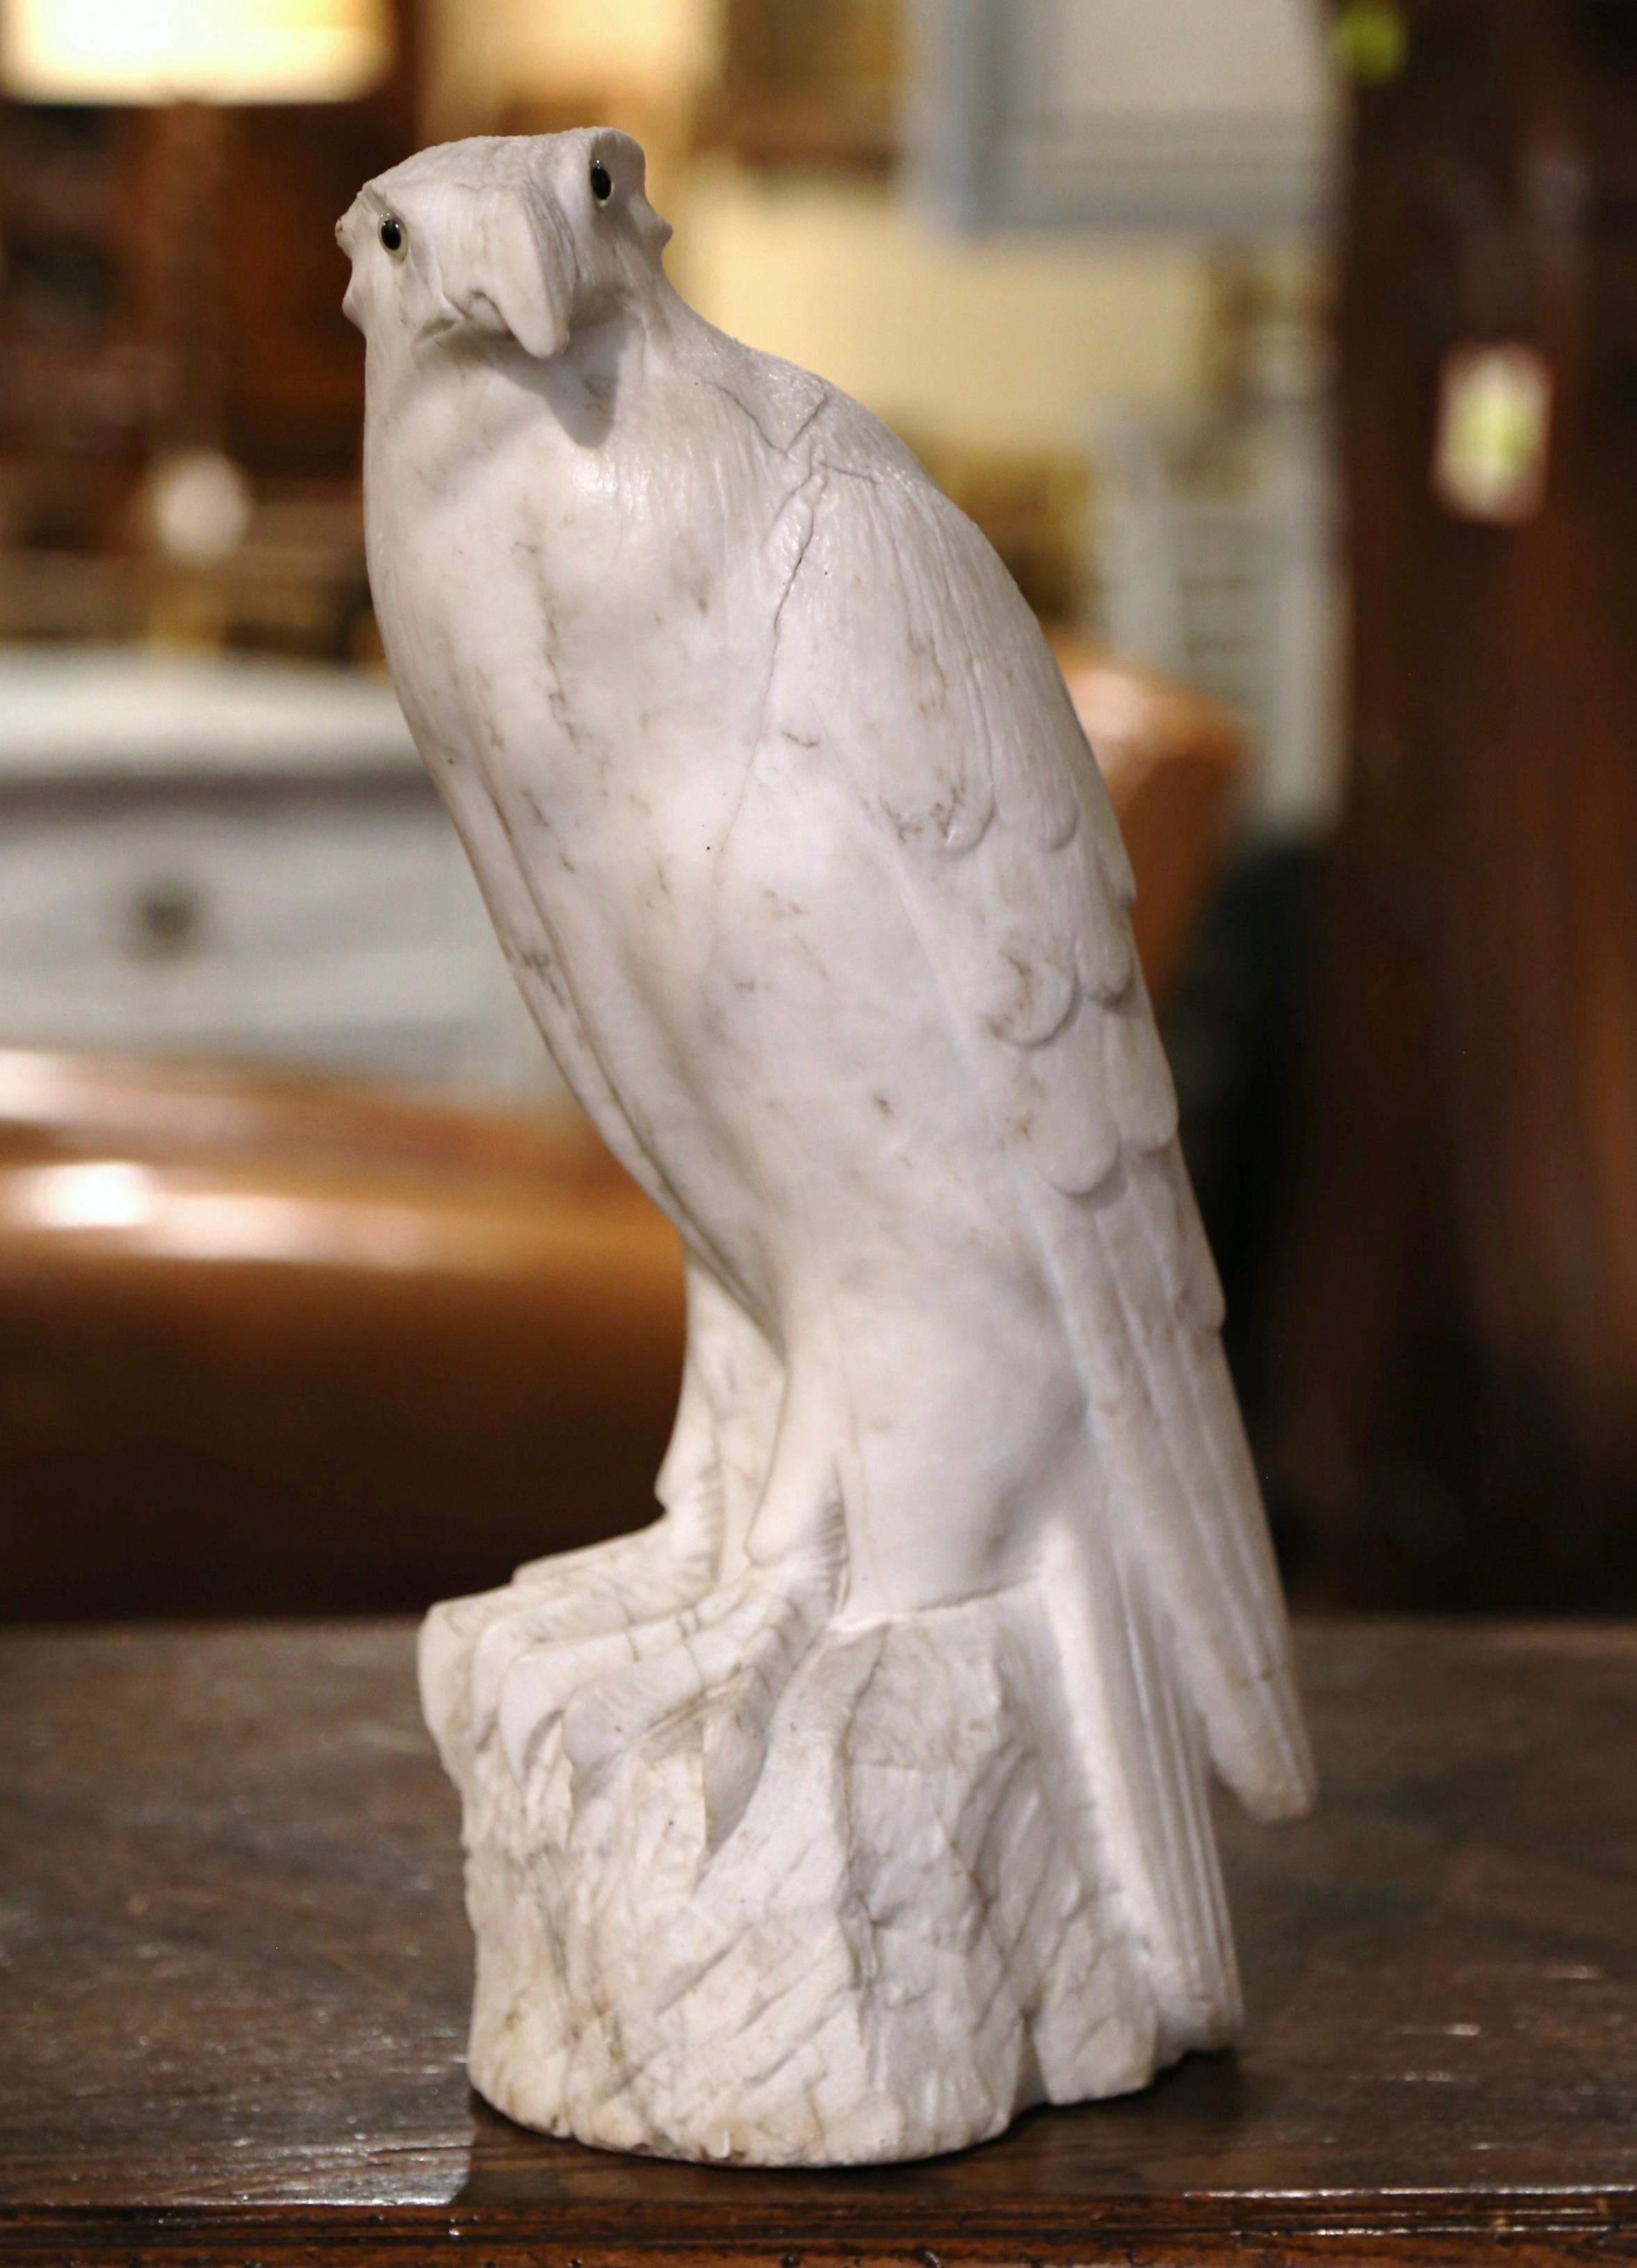 Décorez une étagère ou le bureau d'un homme avec cet aigle majestueux en marbre antique sculpté. Créée en France vers 1870 et taillée dans un marbre blanc veiné de gris, cette grande sculpture représente un oiseau fier, debout sur un rocher